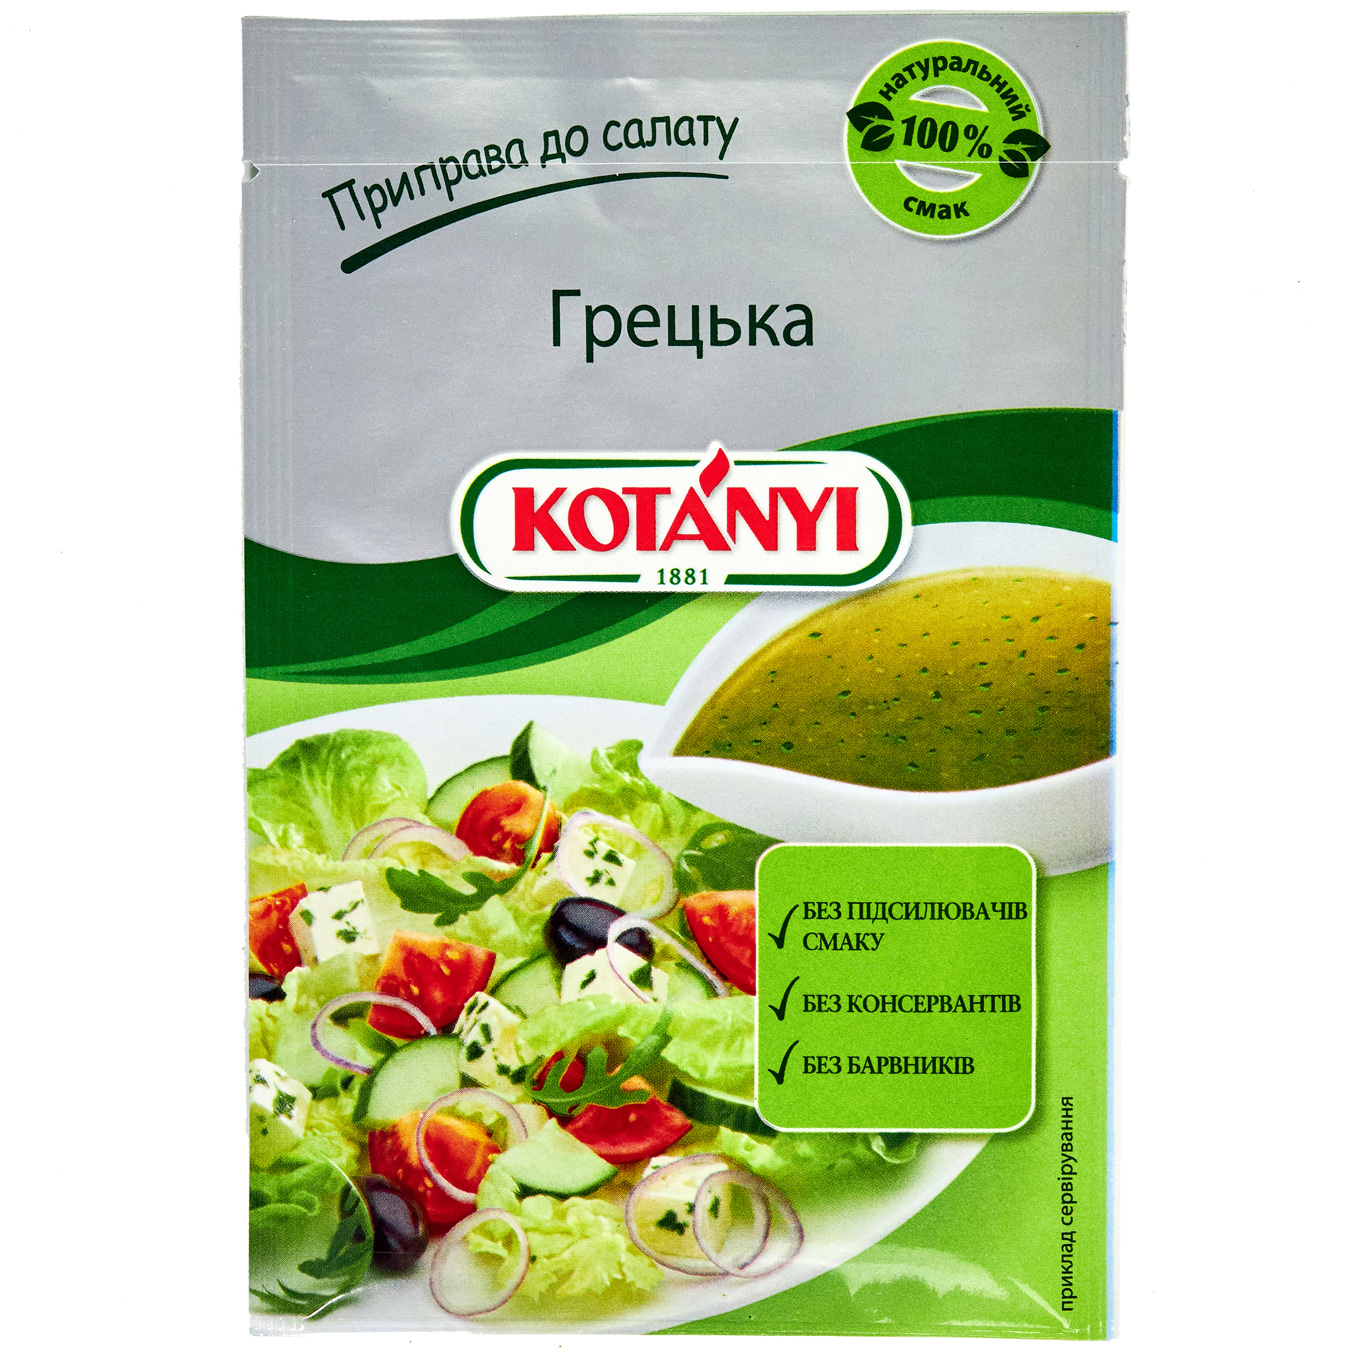 Kotanyi Spices for Salad Greek 13g